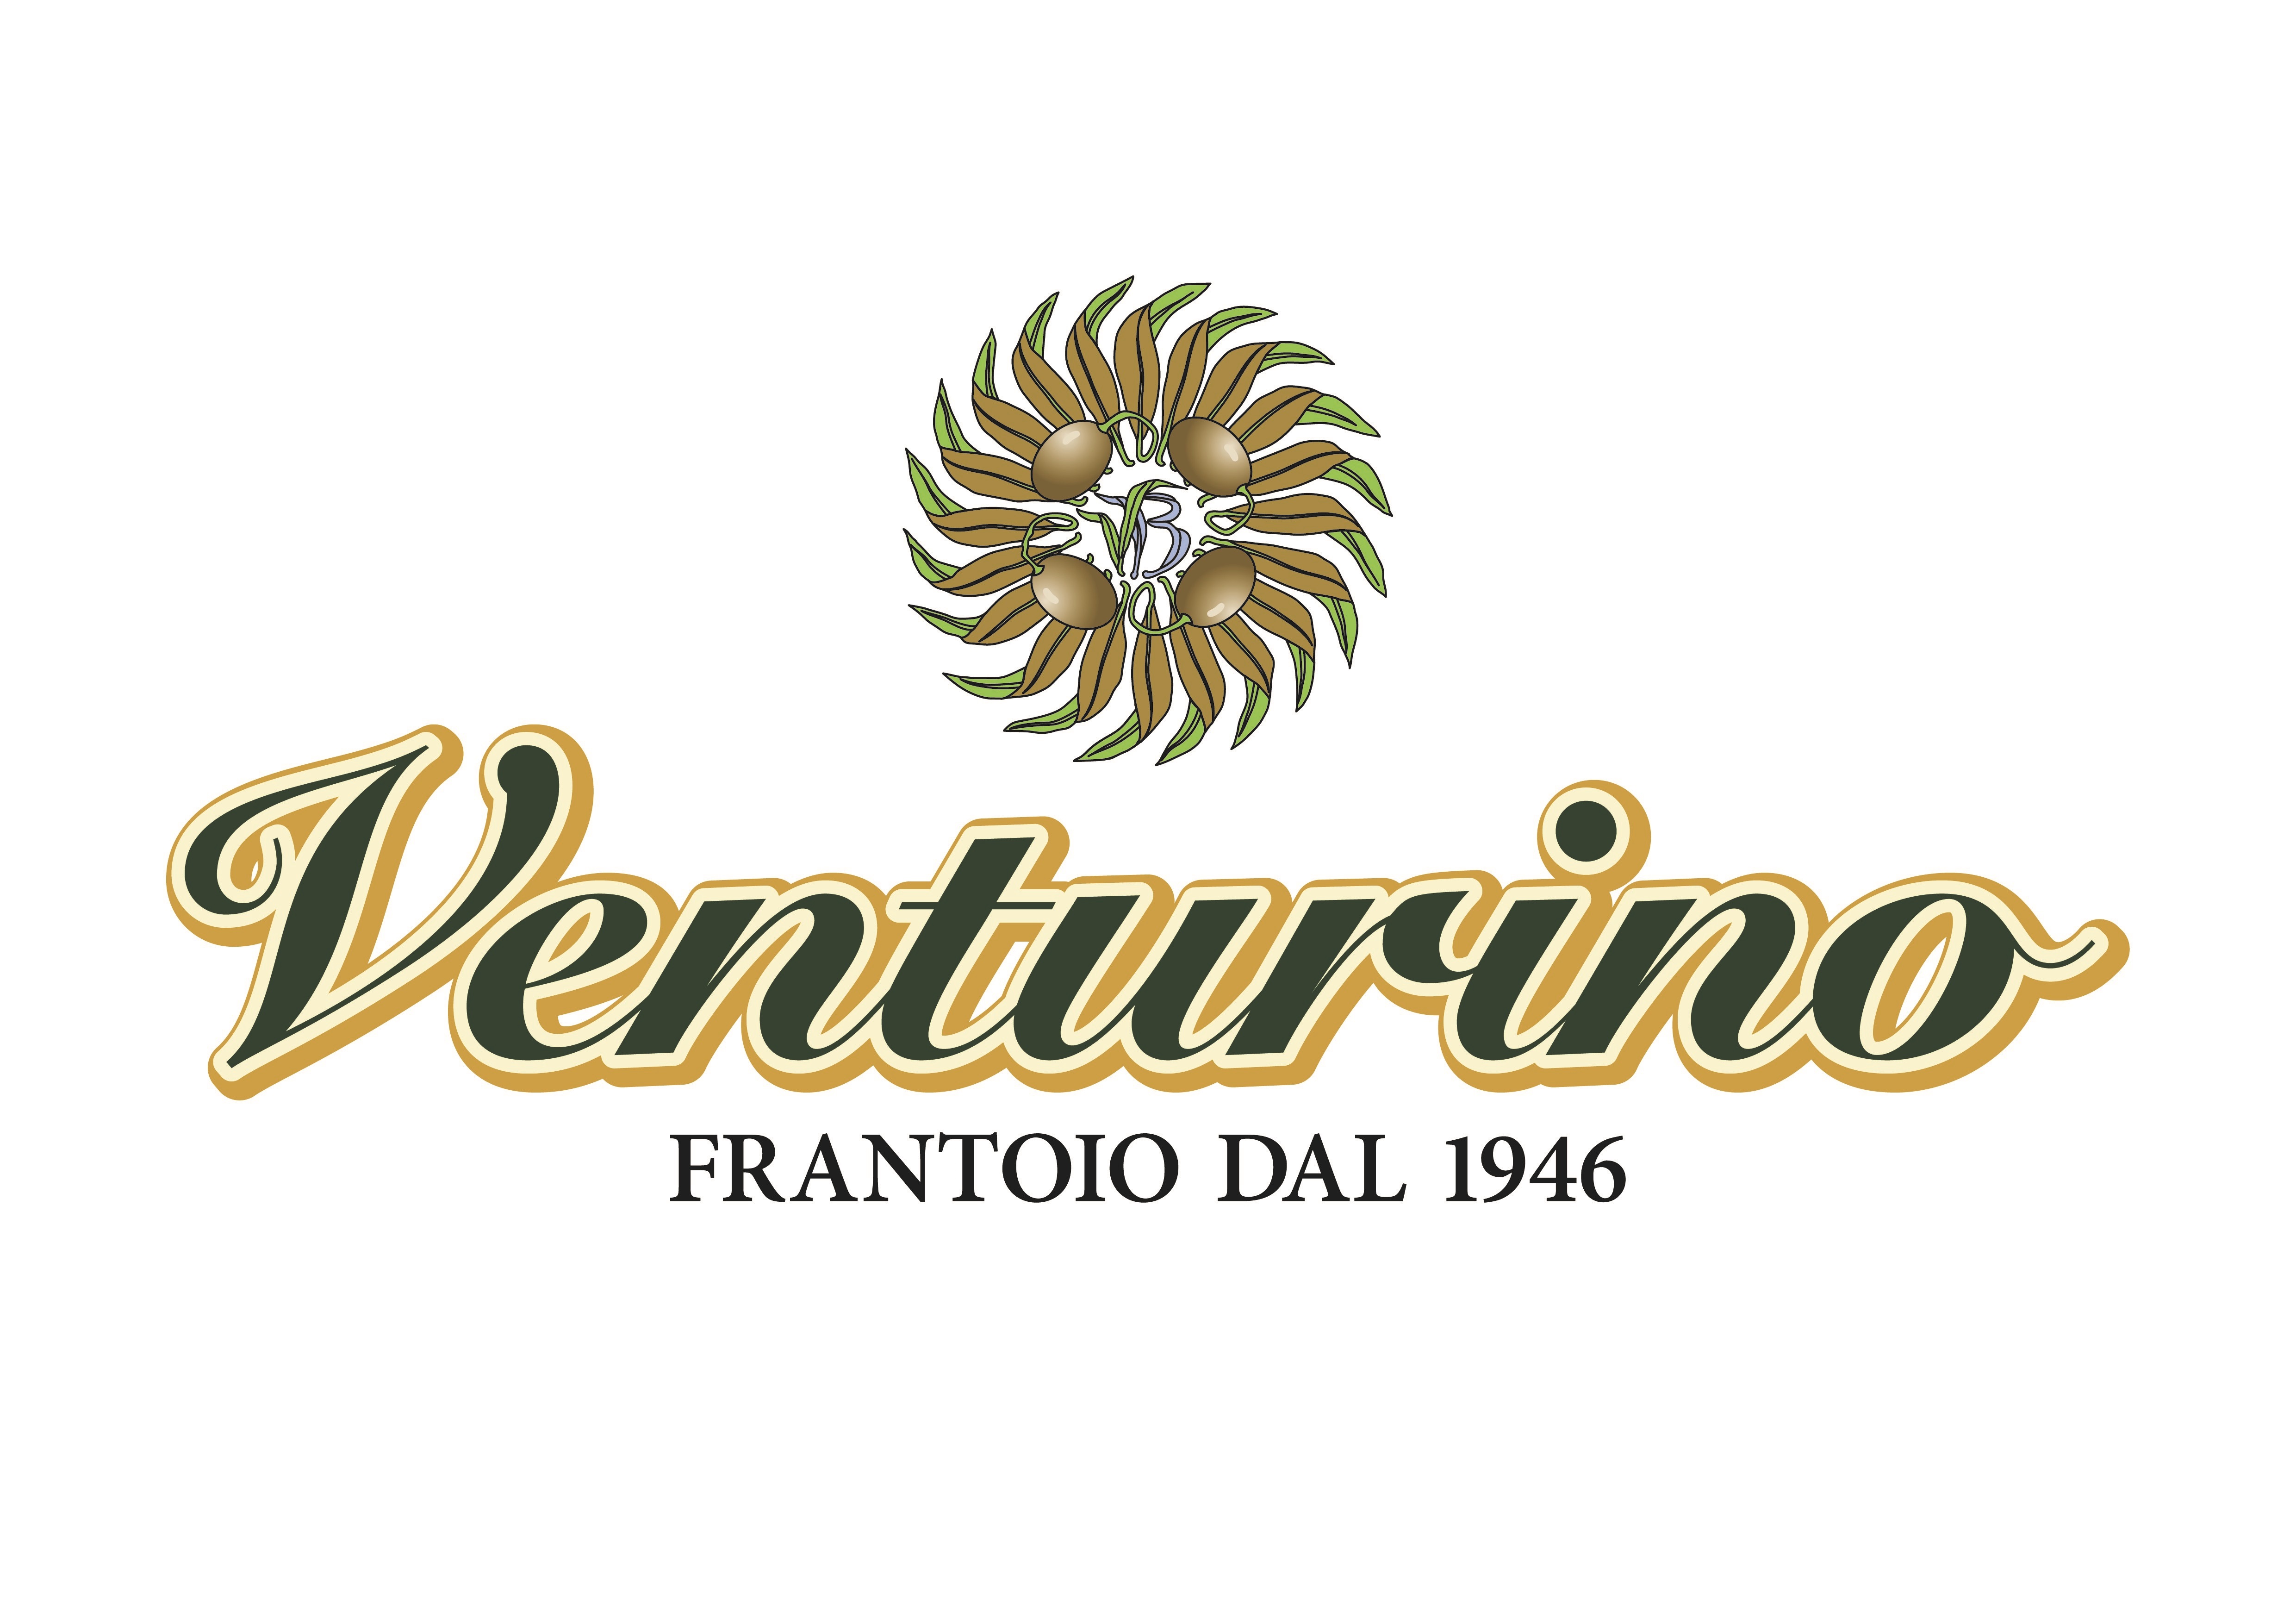 FRANTOIO VENTURINO BARTOLOMEO SRL